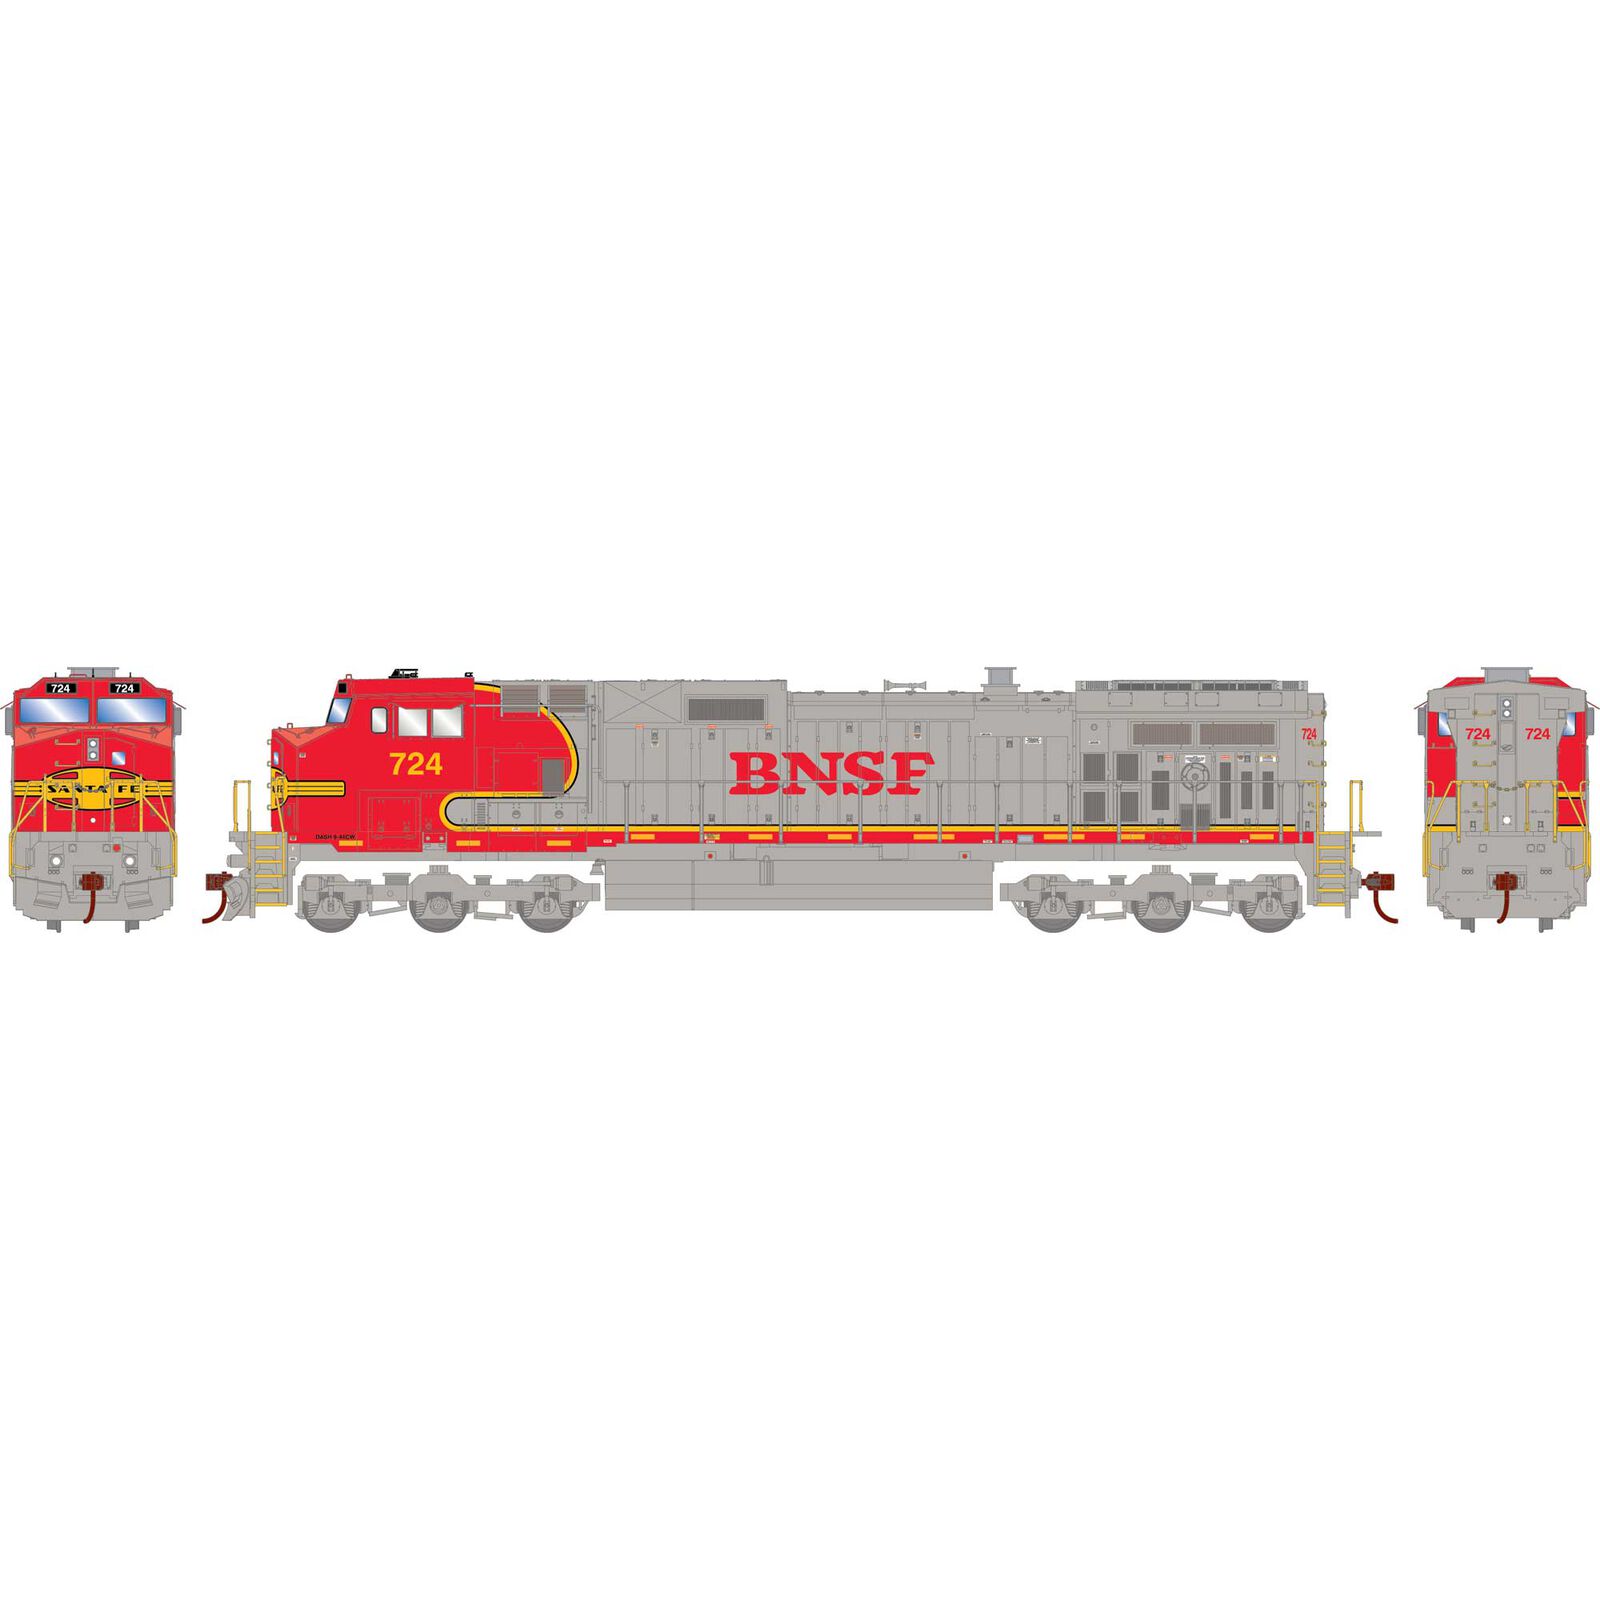 HO Dash 9-44CW Locomotive Sound-Ready, BNSF & Warbonnet #724